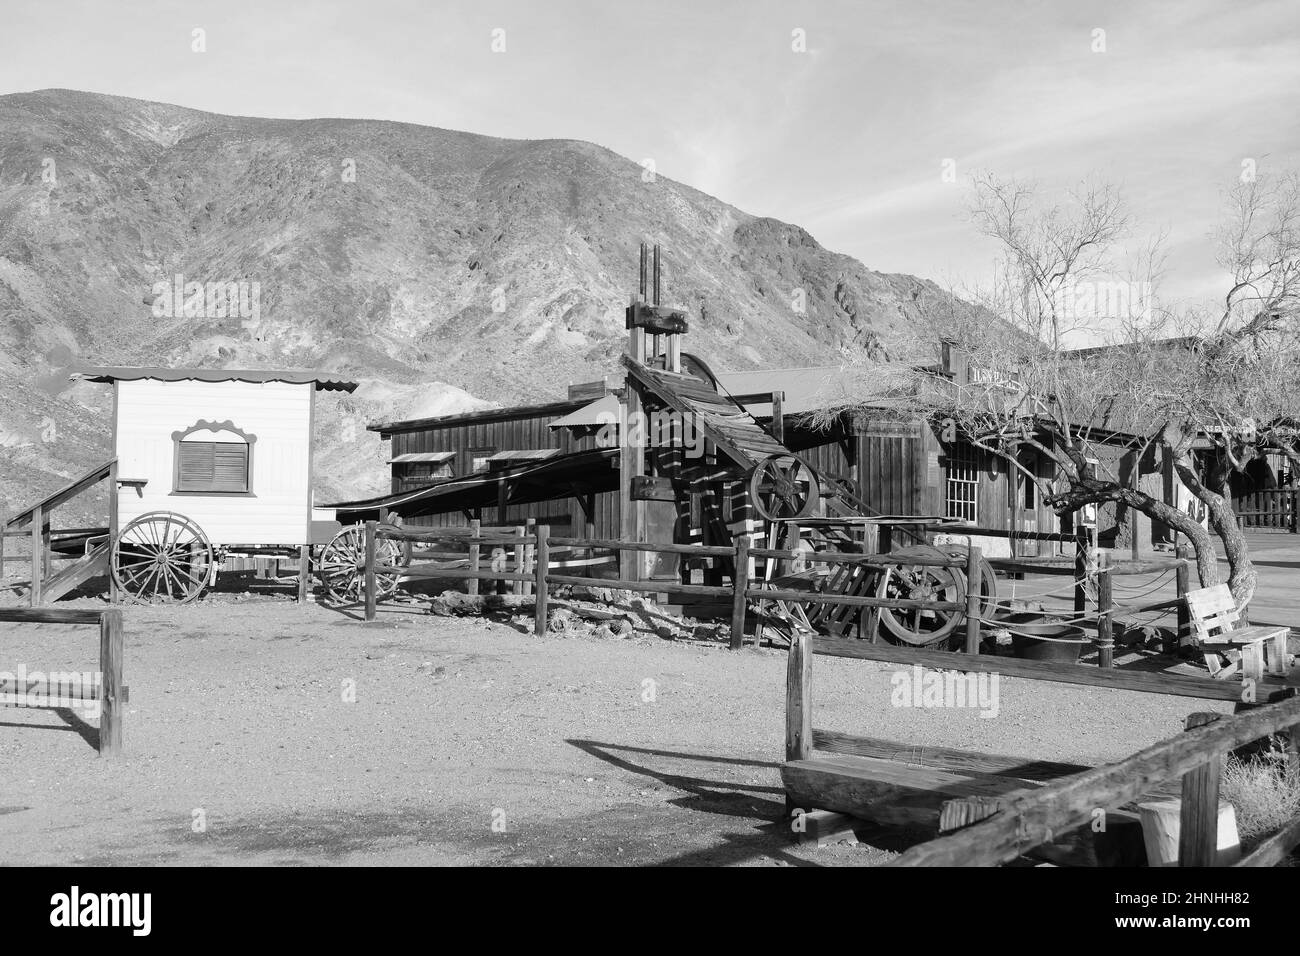 Foto in bianco e nero di macchinari minerari in legno e di un carro trainato da cavalli nella città fantasma del selvaggio West di Calico, San Bernardino County, California, USA Foto Stock